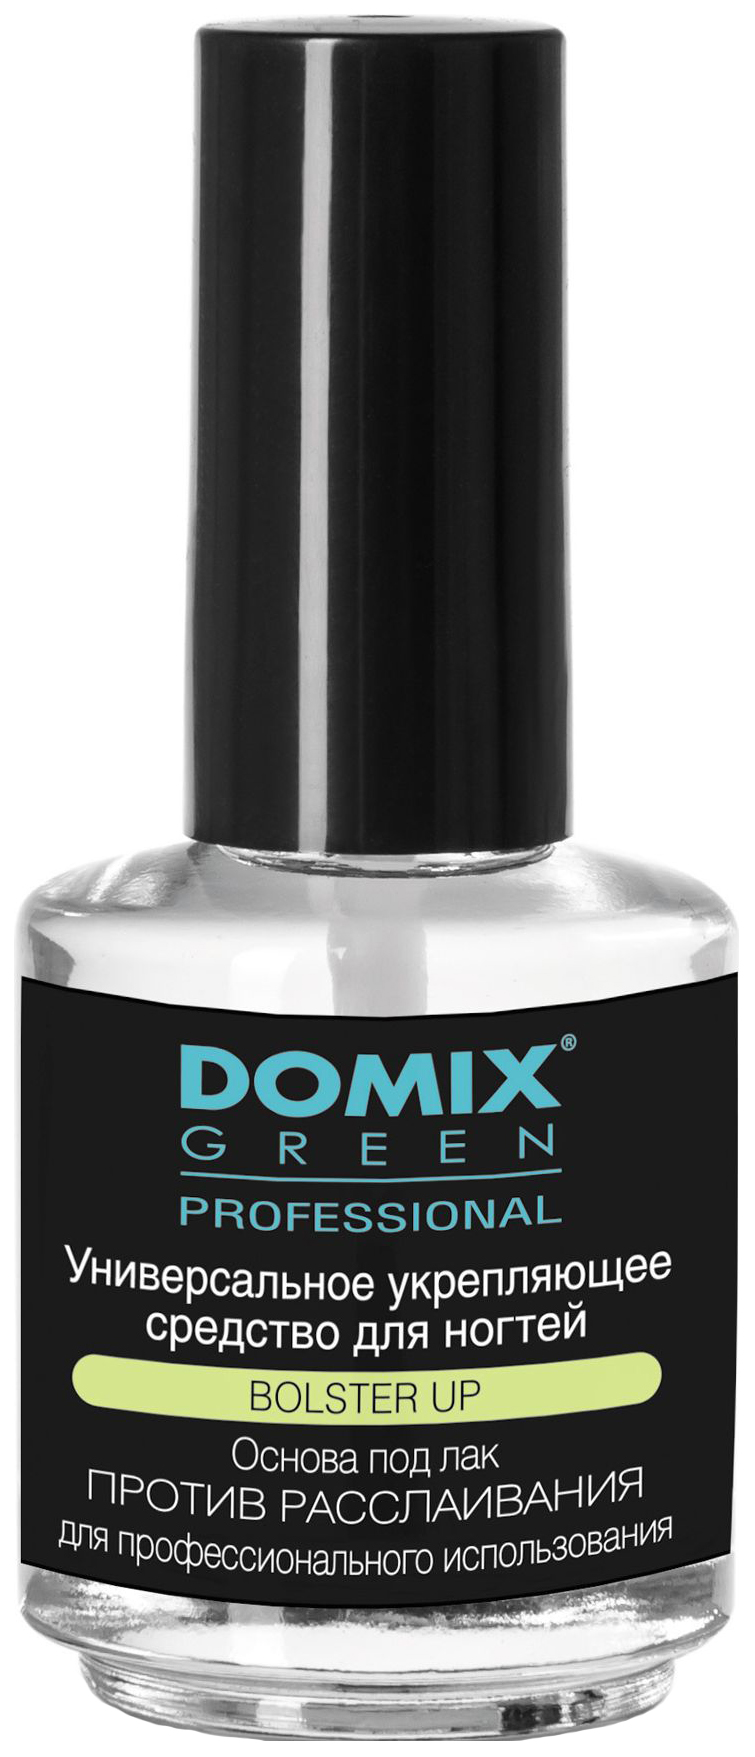 Лечебный лак Domix Укрепляющий миска для краски фуксия domix green professional 386378